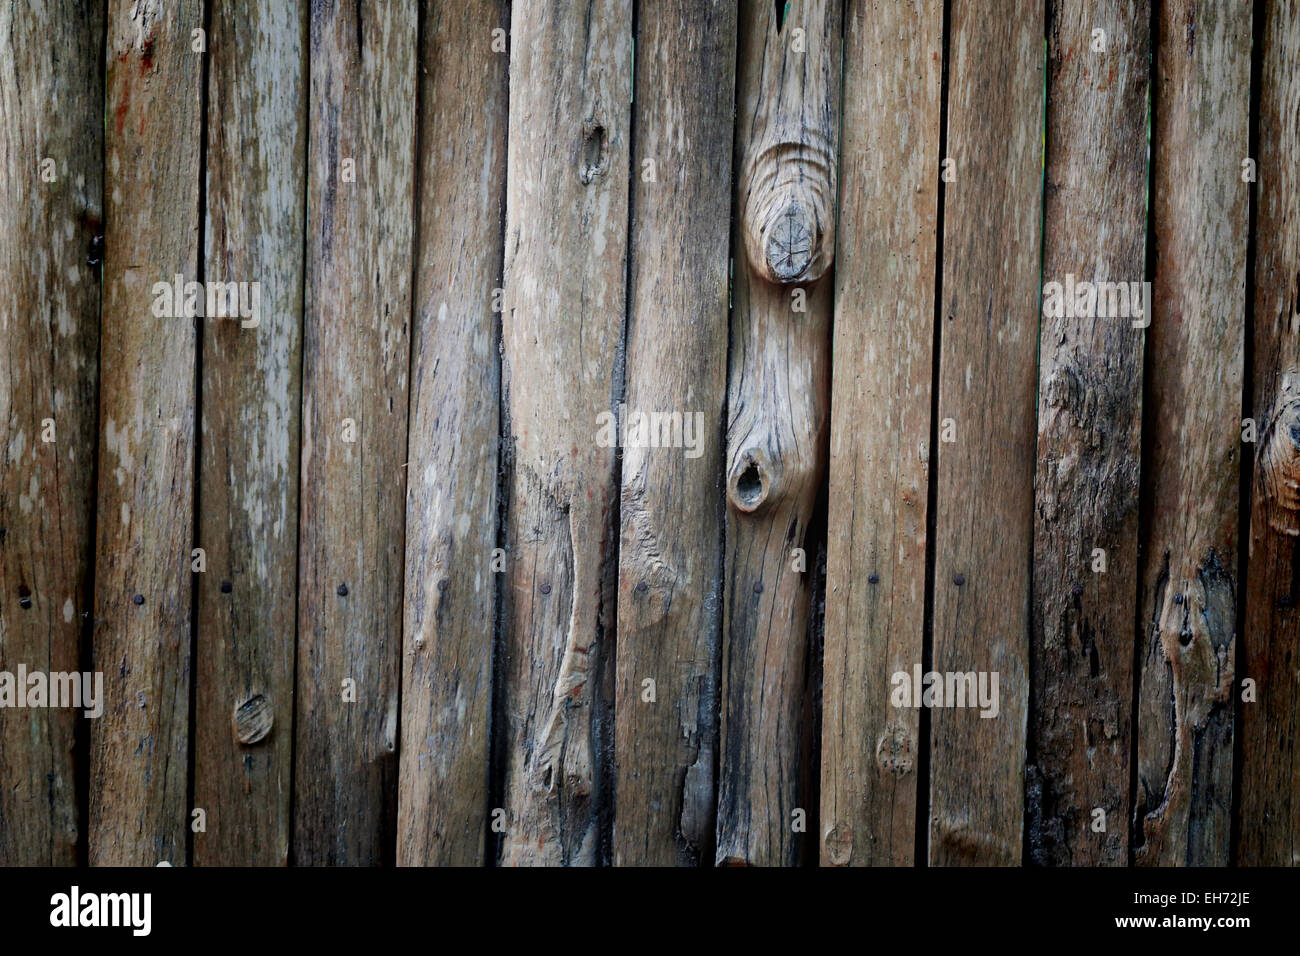 Viejas paredes de madera para la imagen de fondo. Foto de stock